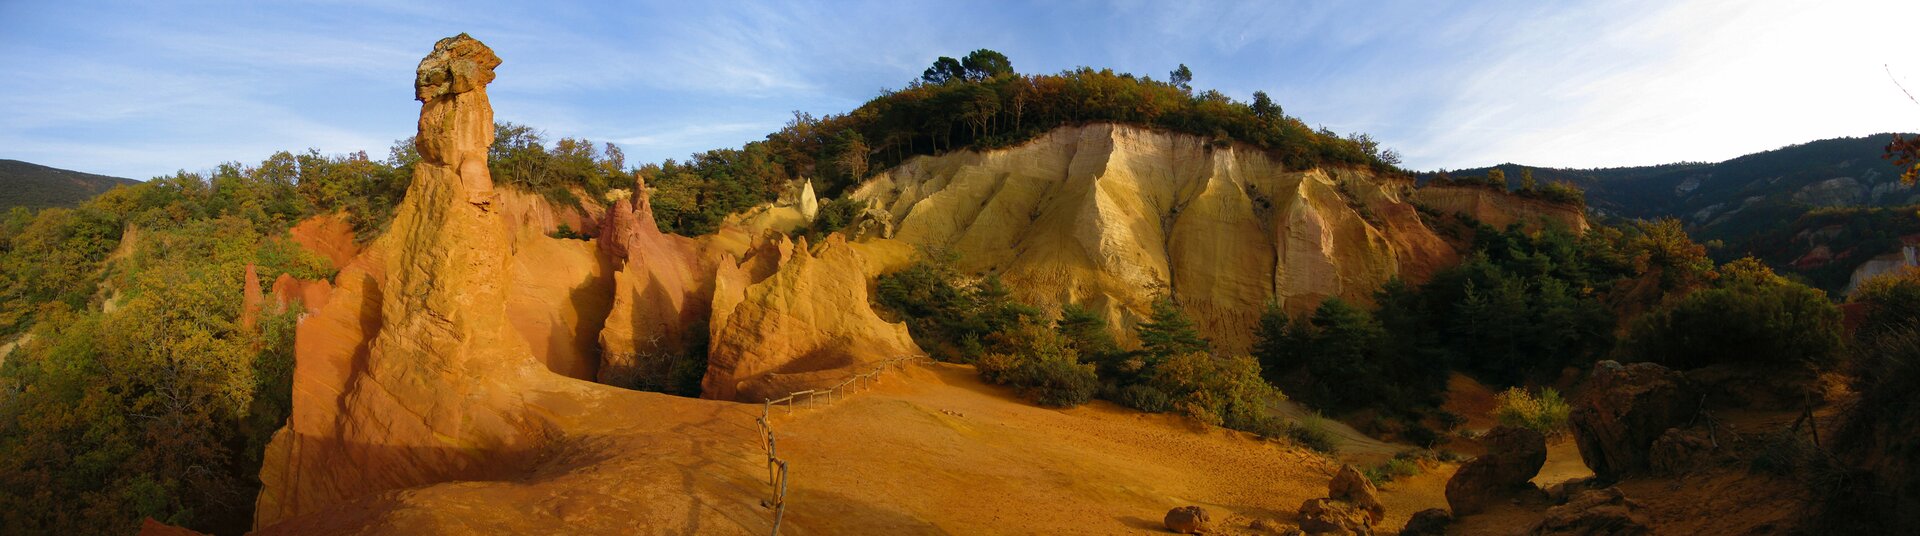 Na zdjęciu znajduje się panorama ukazująca skały w kolorze czerwono-brązowym. Są one pozbawione roślinności. Drzewa rosną po prawej i po lewej od skał. Nad skałami niebo jest jasne.